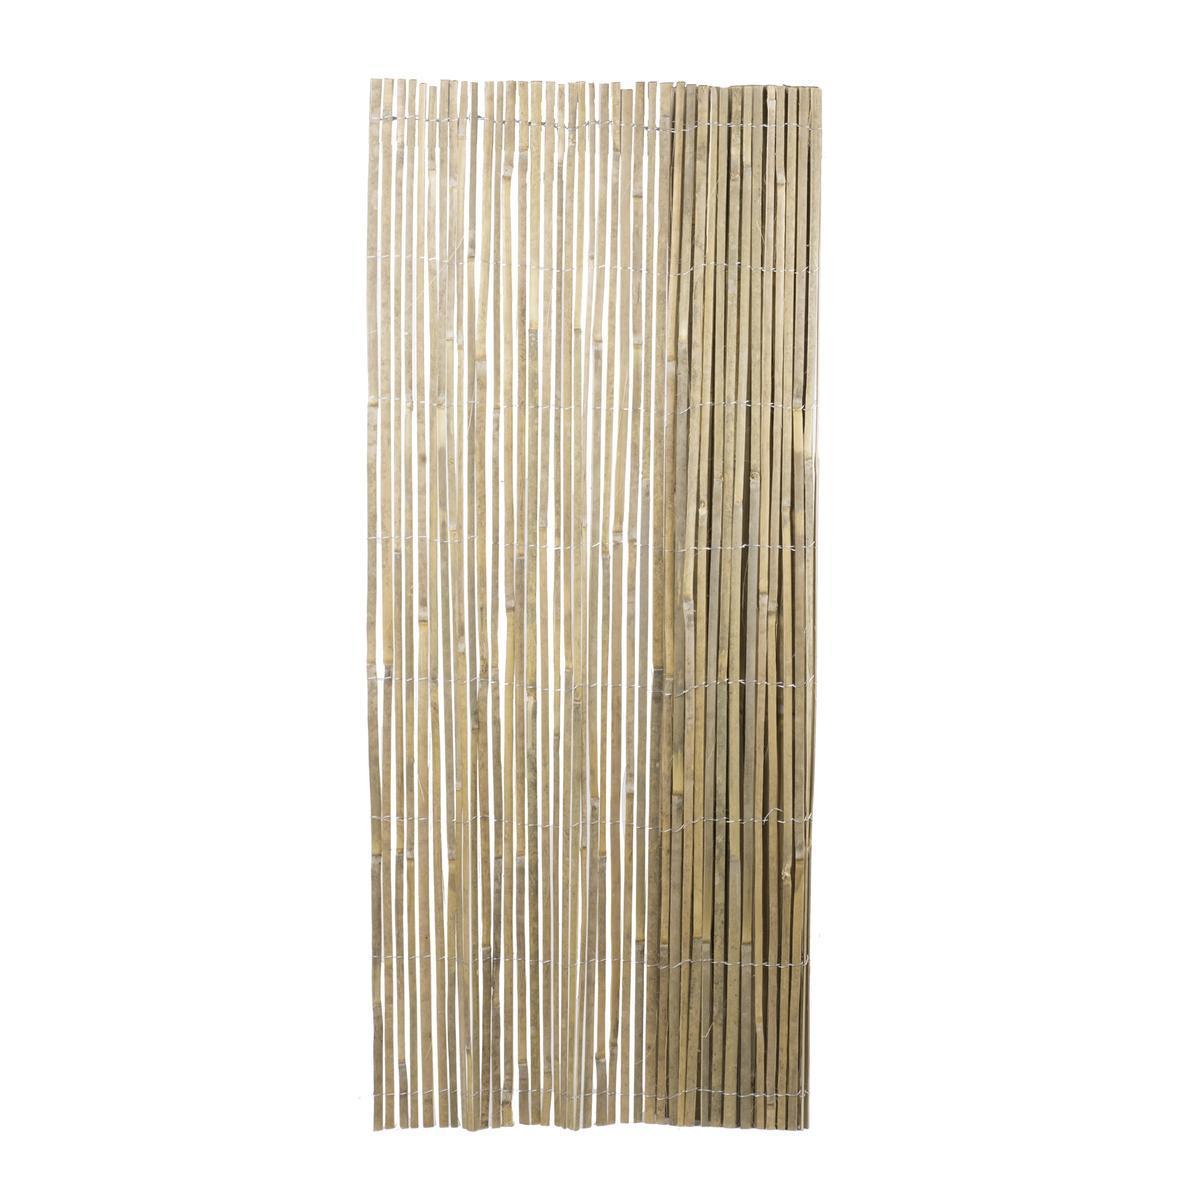 Canisse bambou fendu - 1 x L 3 m - CULTIVA